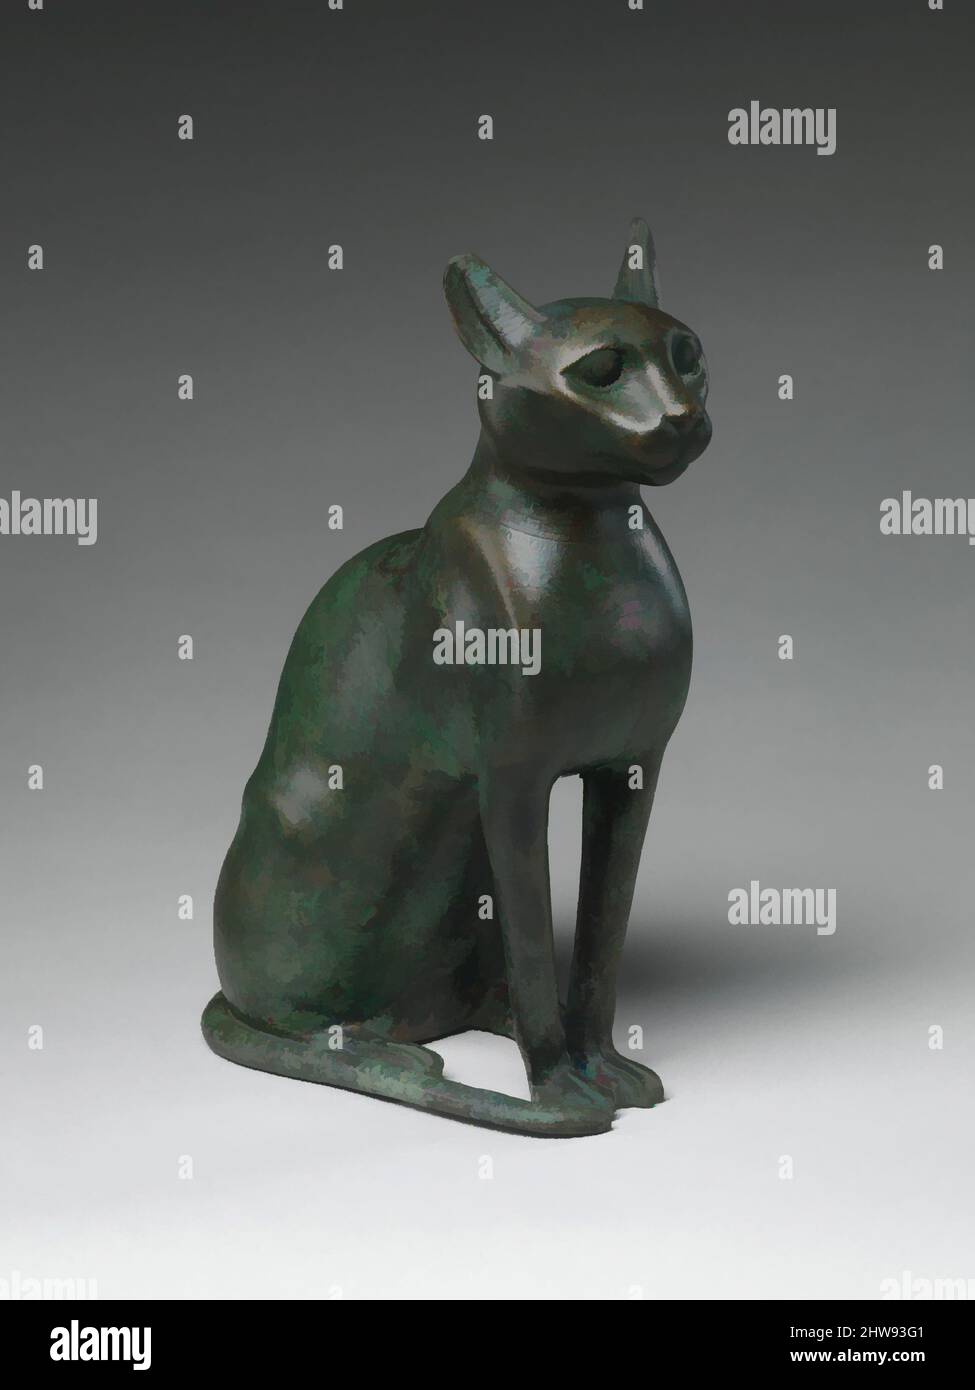 Art inspiré par la statuette Cat destinée à contenir un chat momifié, période Ptolemaic, 332–30 av. J.-C., d'Égypte, bronze perlé, h. (y compris les languettes) 32 cm (12 5/8 po); w. 11,9 (4 11/16 po); d. 23,3 cm (9 3/16 po), le chat était l'animal sacré de la déesse Bastet, une grande et bienveillante, des œuvres classiques modernisées par Artotop avec une touche de modernité. Formes, couleur et valeur, impact visuel accrocheur sur l'art émotions par la liberté d'œuvres d'art d'une manière contemporaine. Un message intemporel qui cherche une nouvelle direction créative. Artistes qui se tournent vers le support numérique et créent le NFT Artotop Banque D'Images